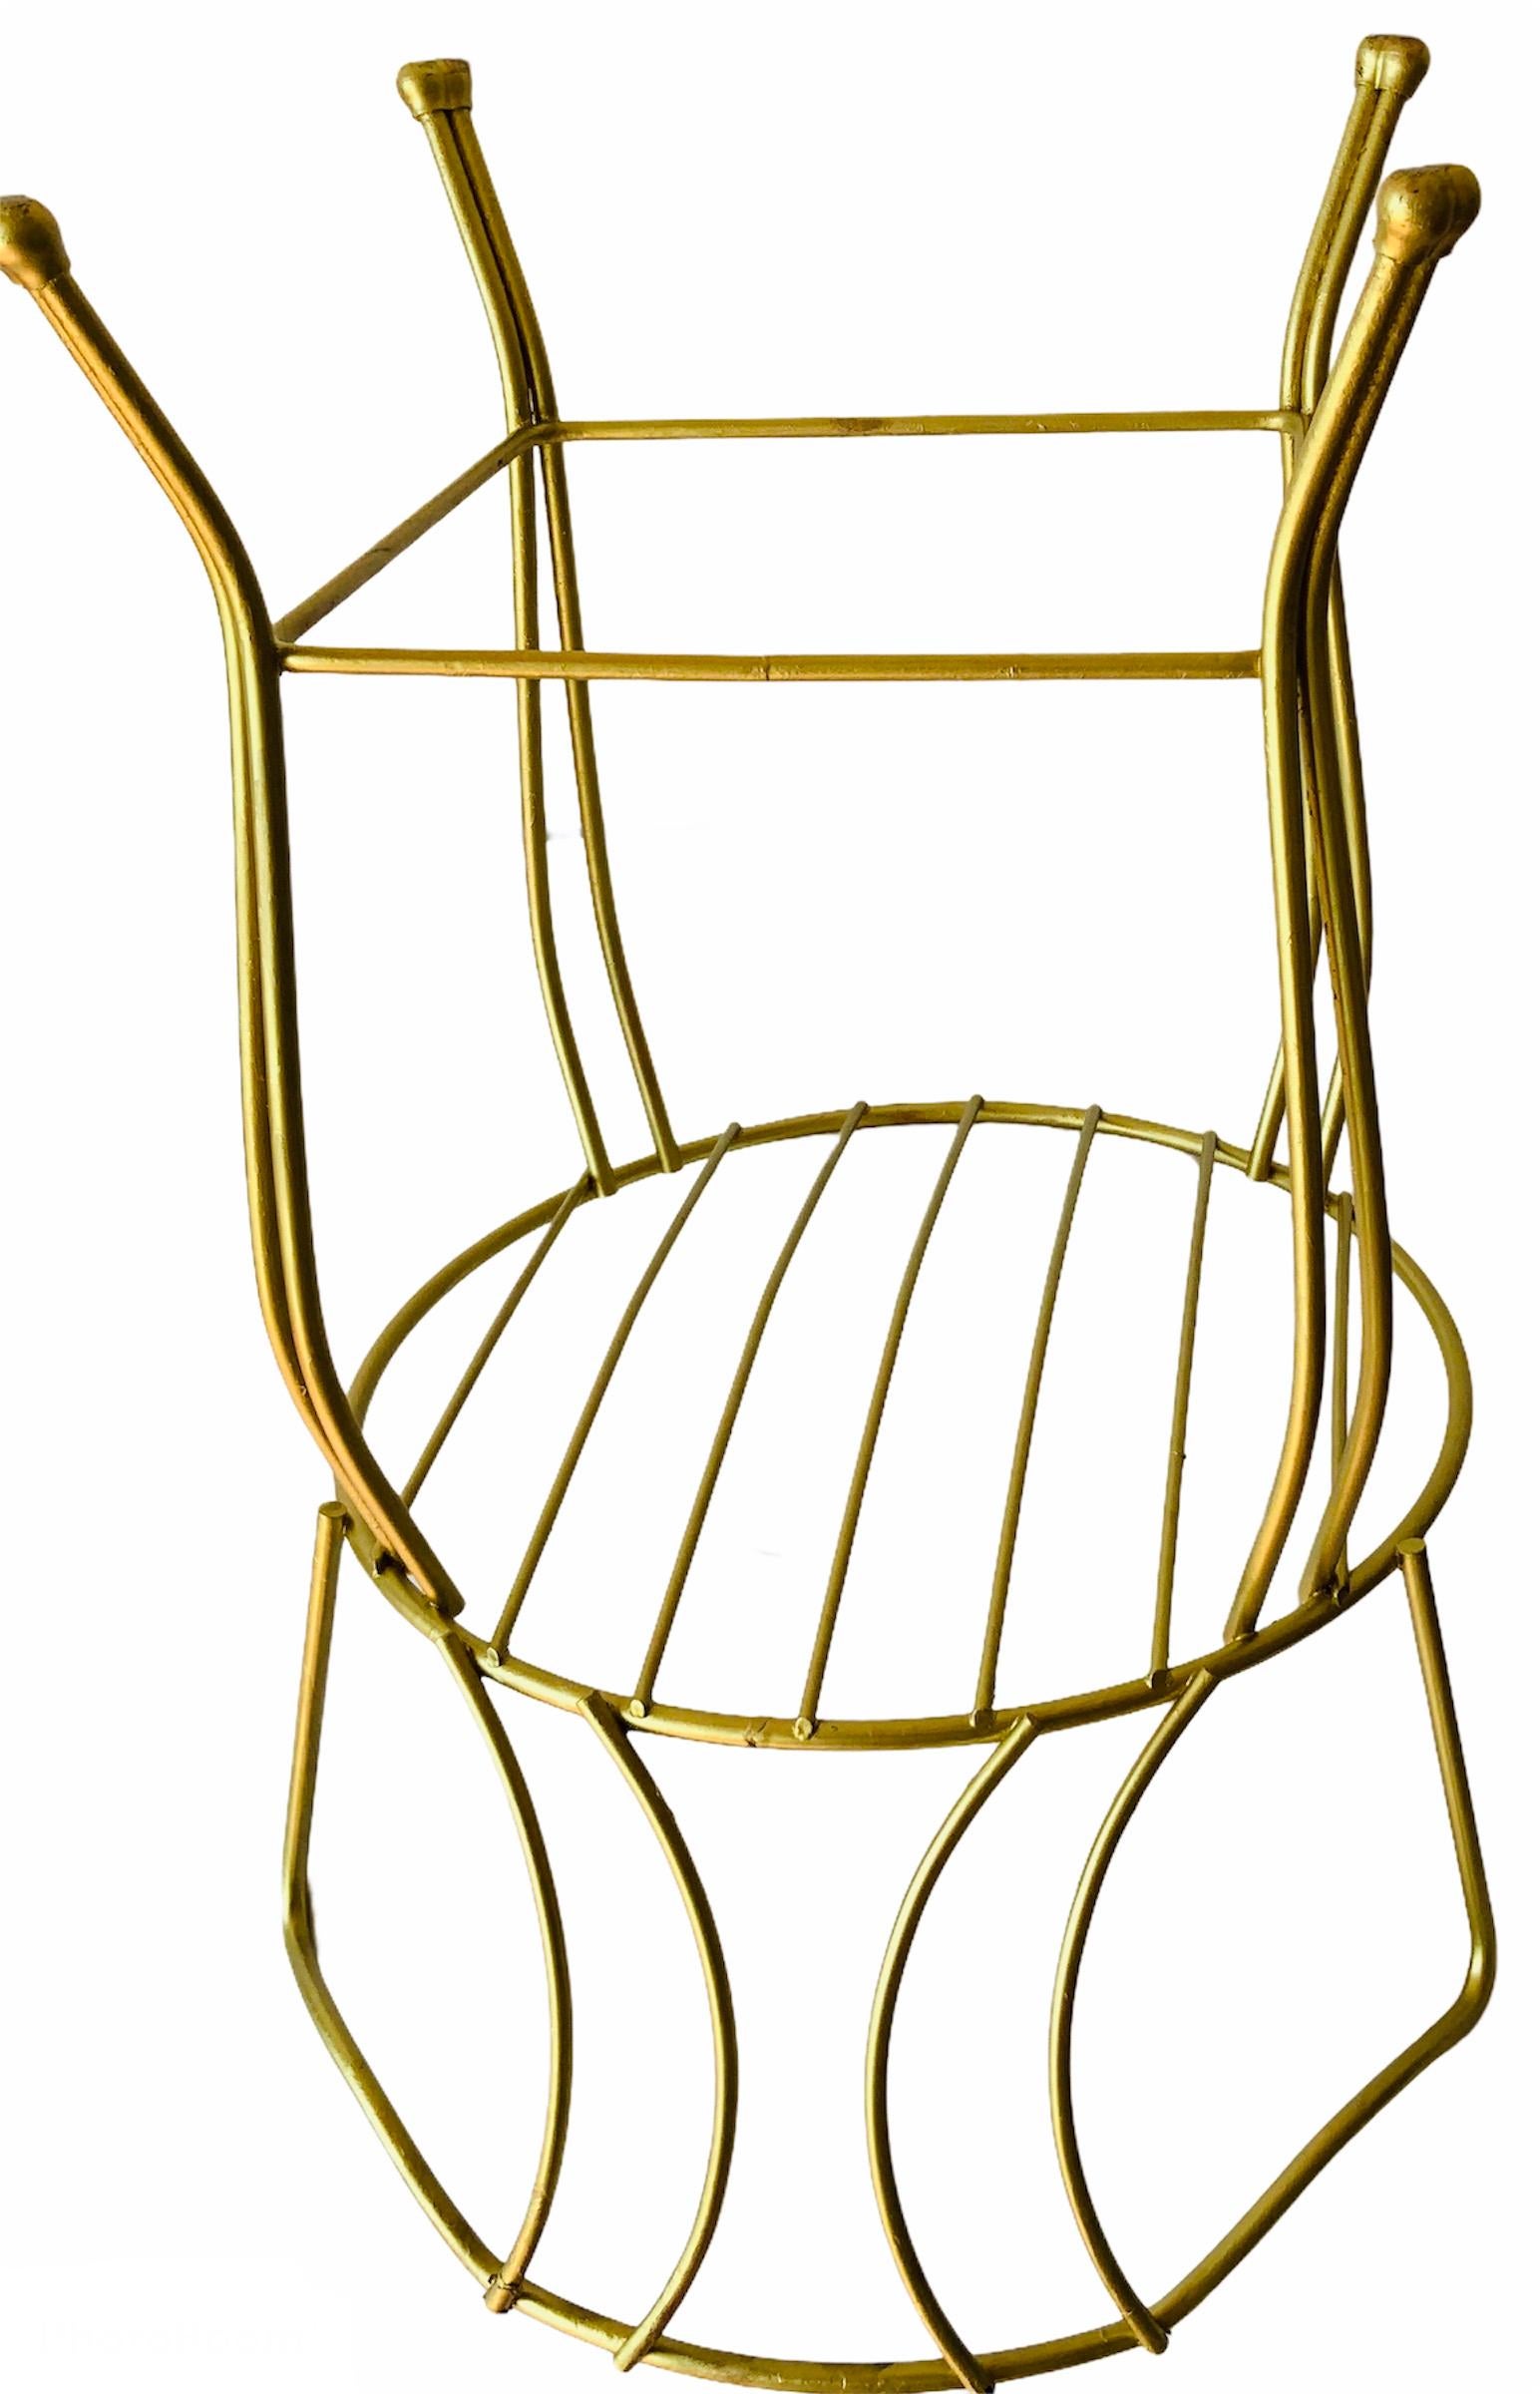 Dies ist ein gold lackiertes Metall Eitelkeit runden Sitz Stuhl / Hocker mit Rückenlehne zu unterstützen. Der Stuhl hat vier Paare von Serpentinenbeinen.